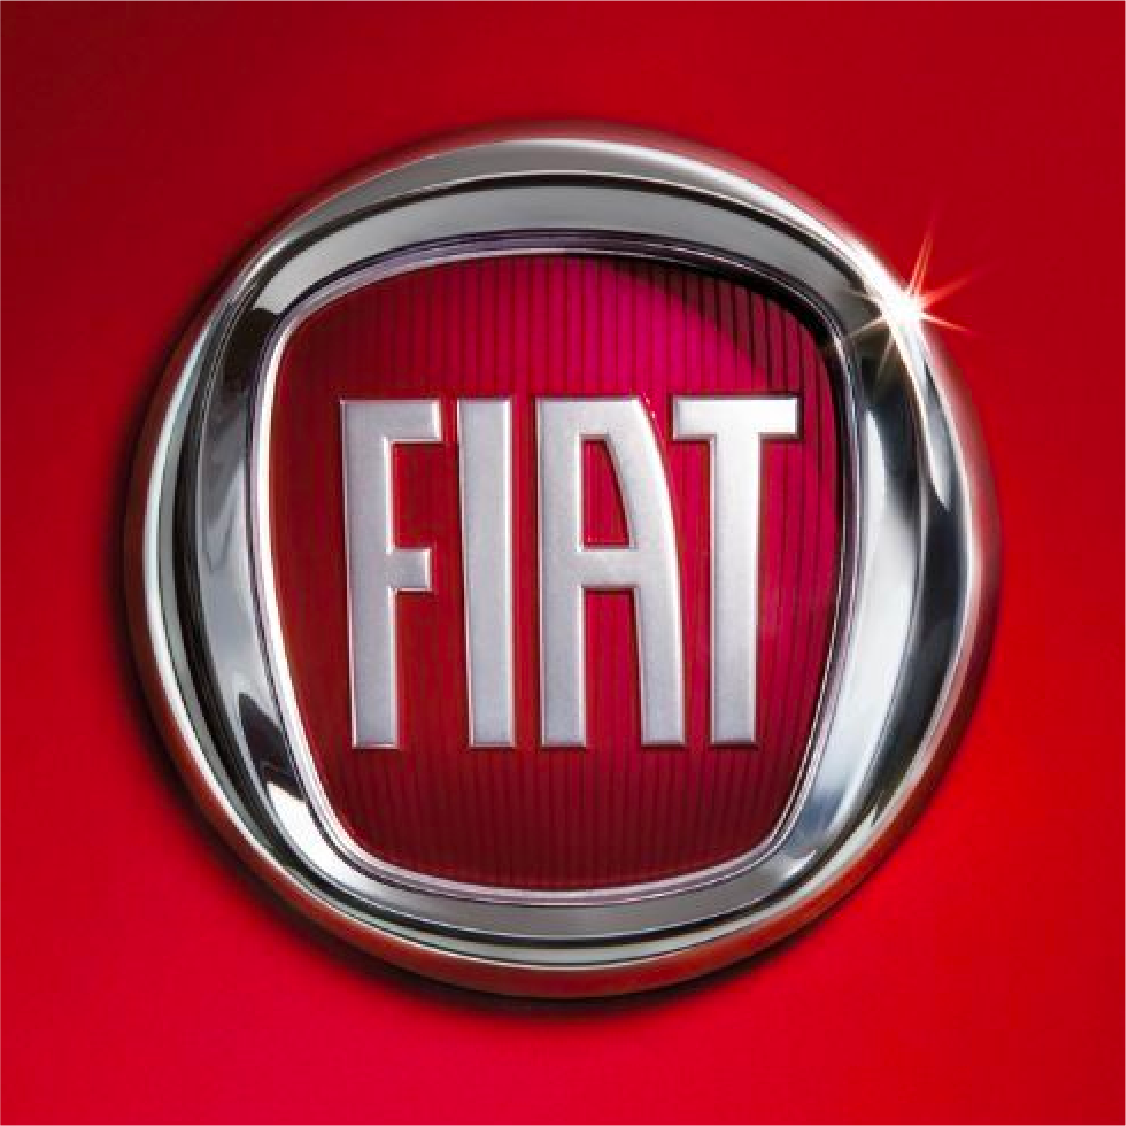 FIAT_logo